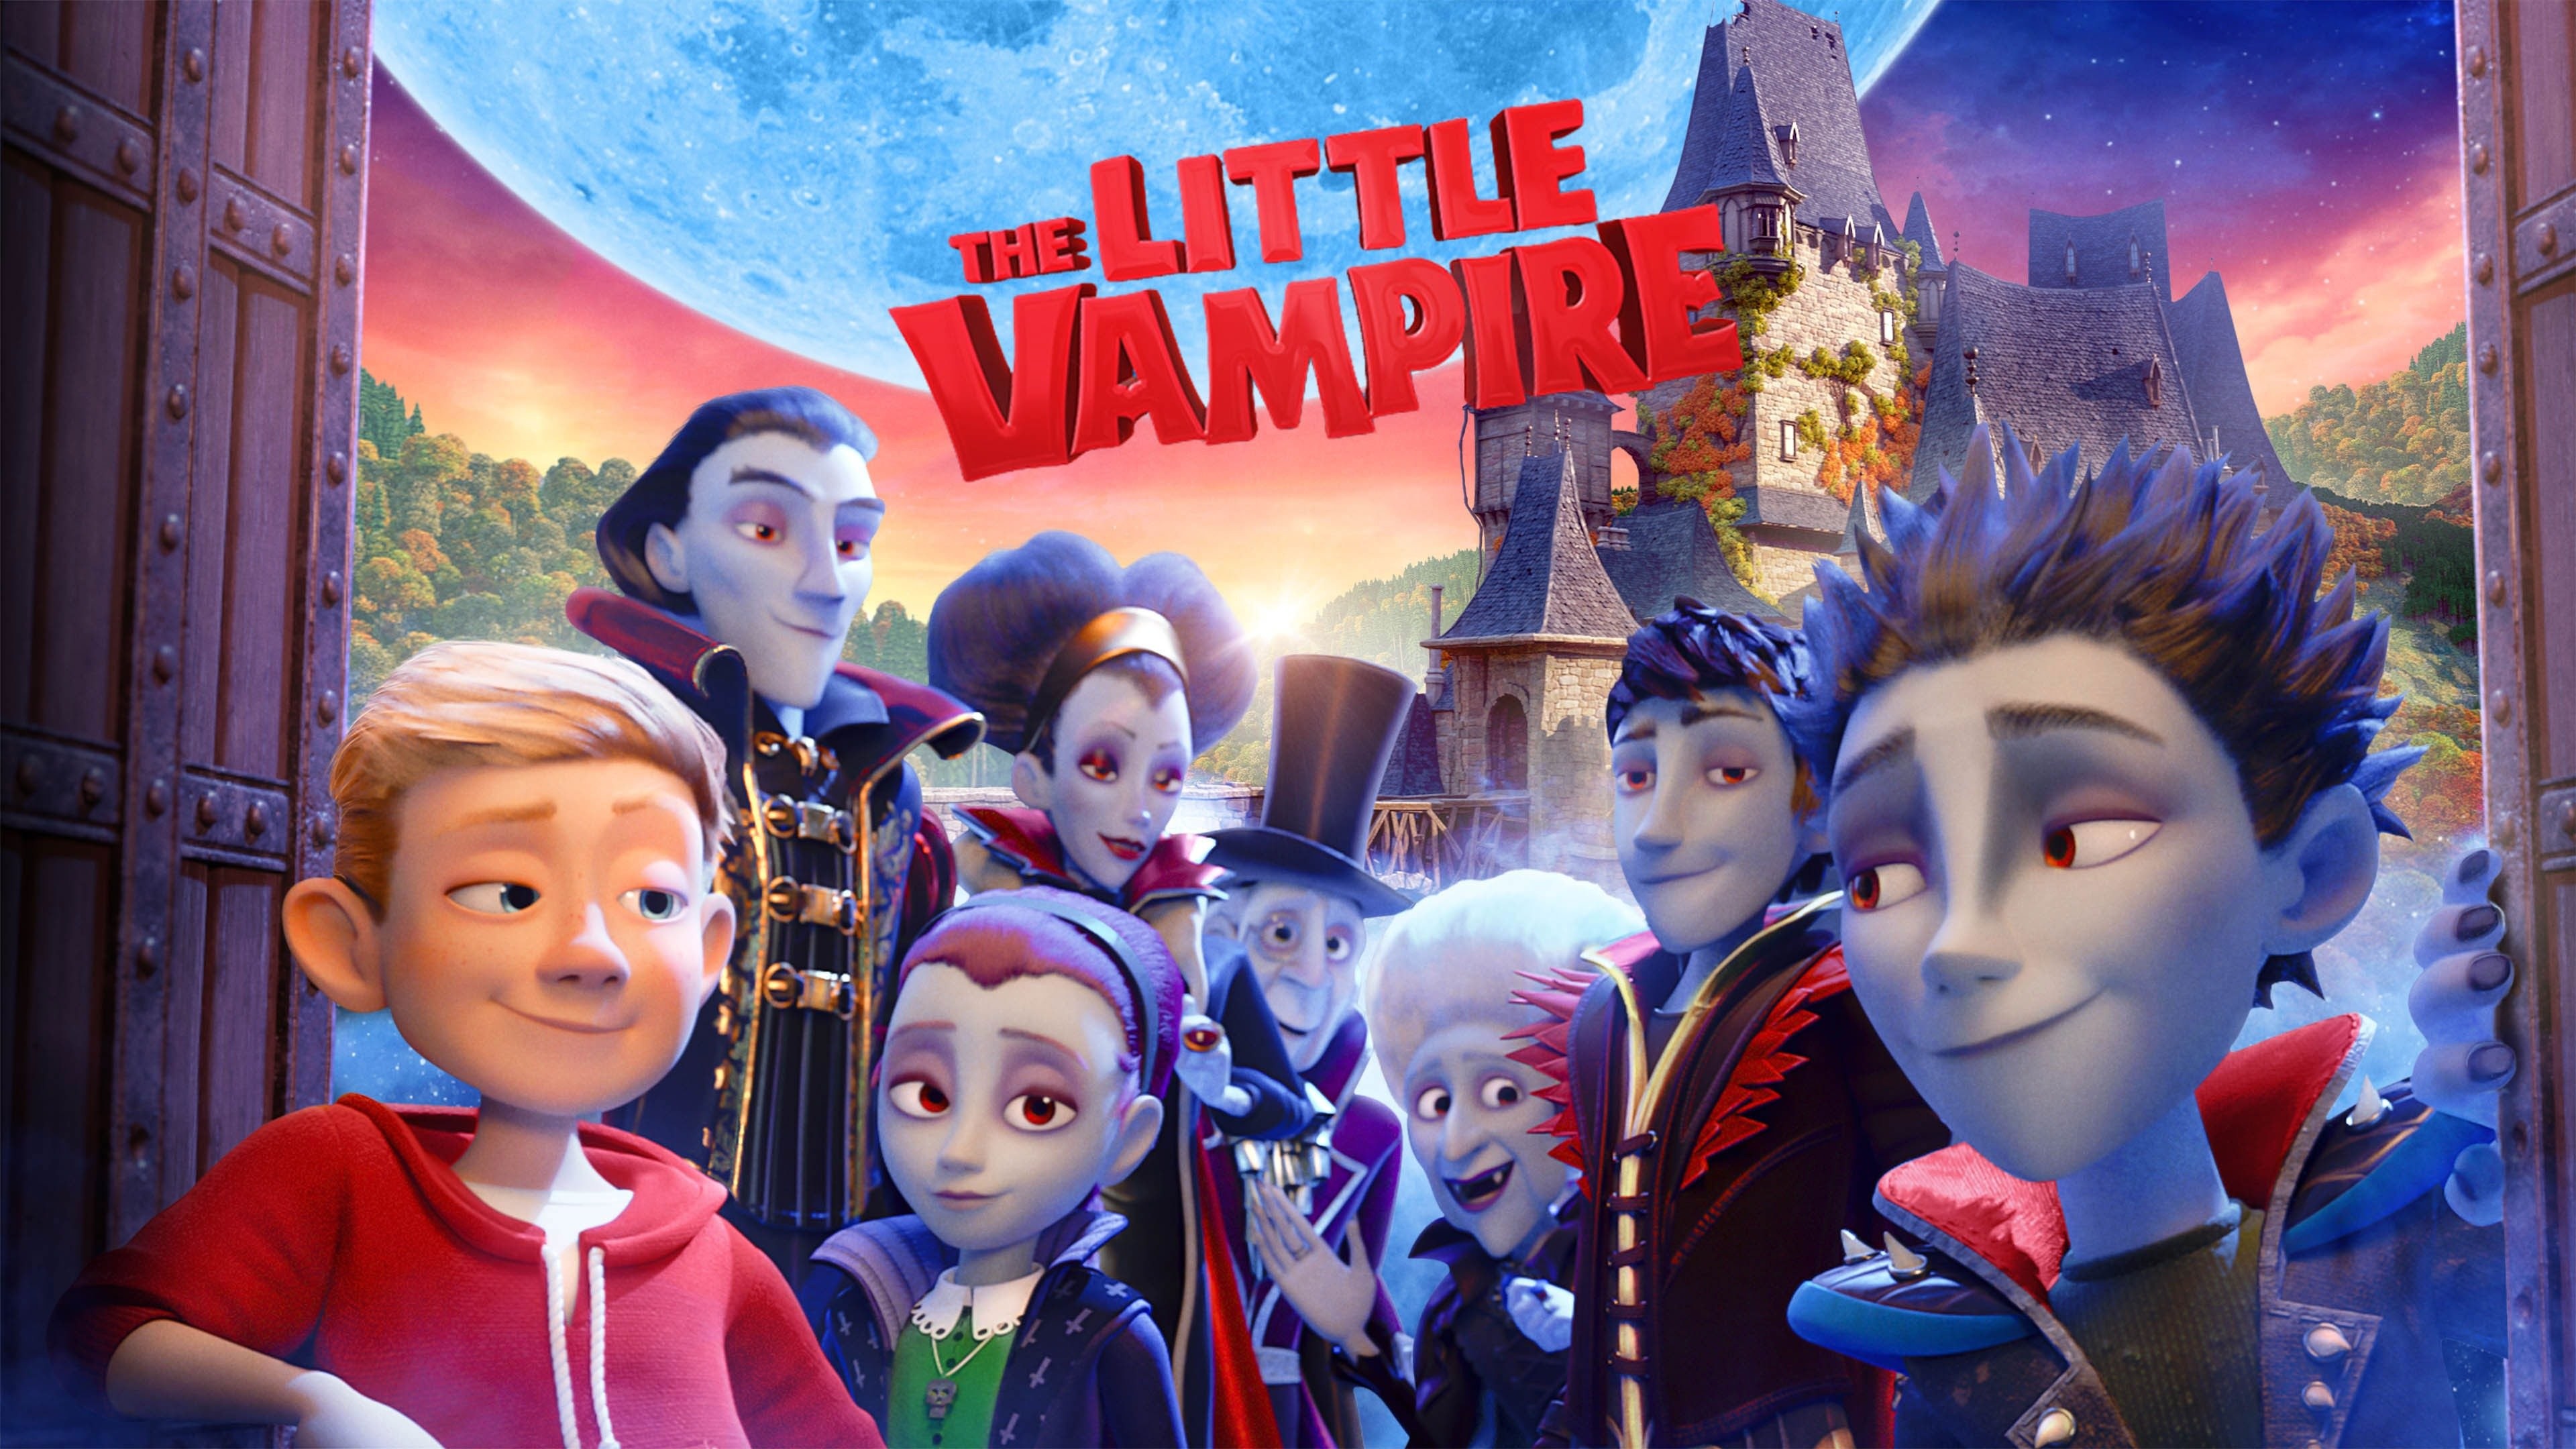 THE LITTLE VAMPIRE FULL Movie Trailer (2018) Animation, Kids & Family 